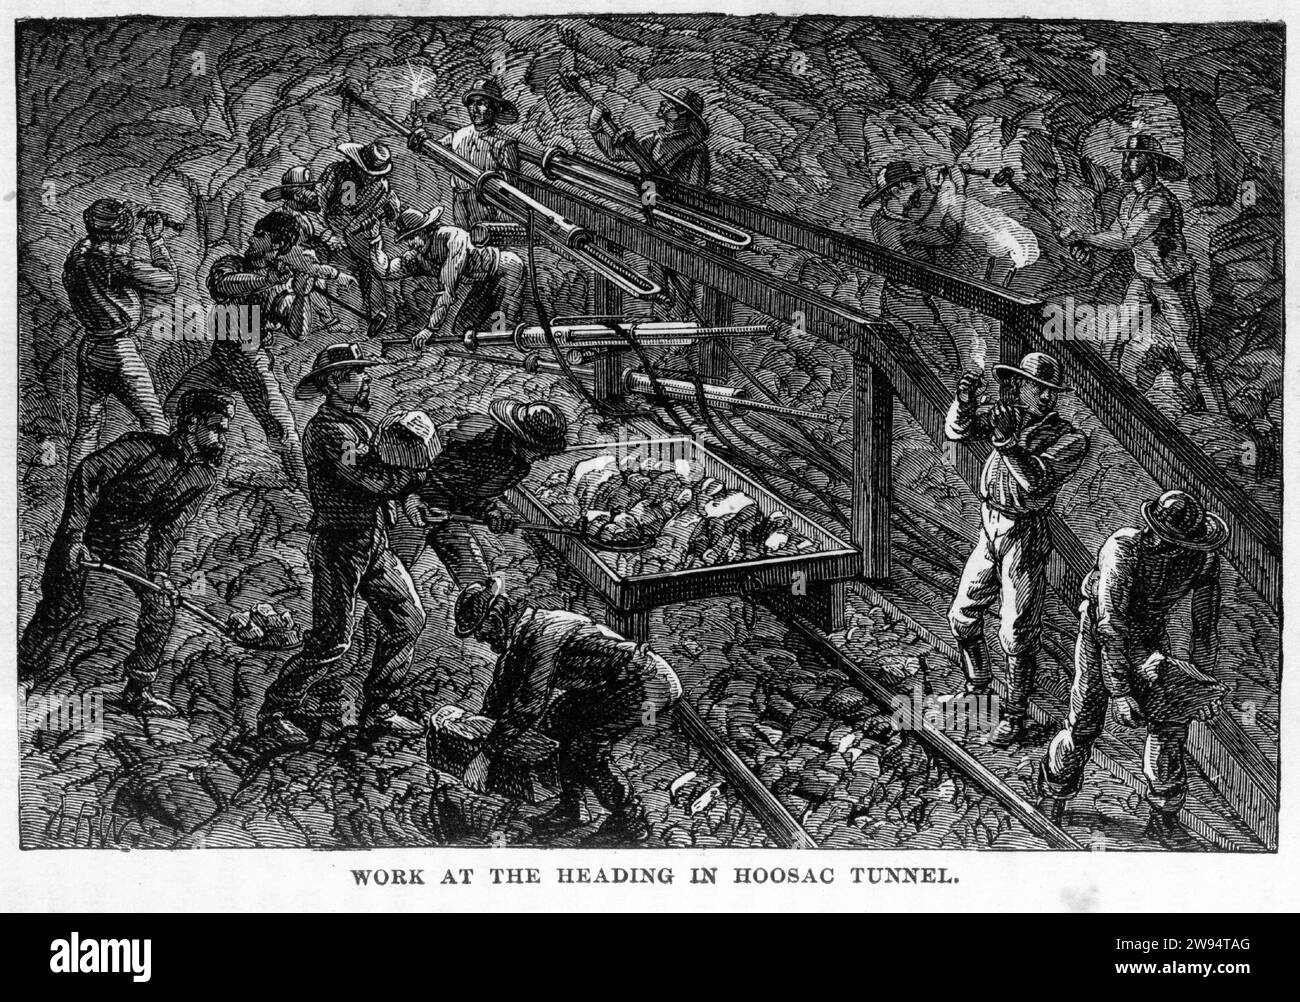 Gravur von Männern, die in Richtung des Hoosac Tunnels (auch Hoosic oder Hoosick Tunnel genannt) arbeiten, einem 4,75 Meilen (7,64 km) langen aktiven Eisenbahntunnel im Westen von Massachusetts, der um 1878 durch die Hoosac Range, eine Verlängerung der Vermont's Green Mountains, von der Underground World aus verläuft Stockfoto